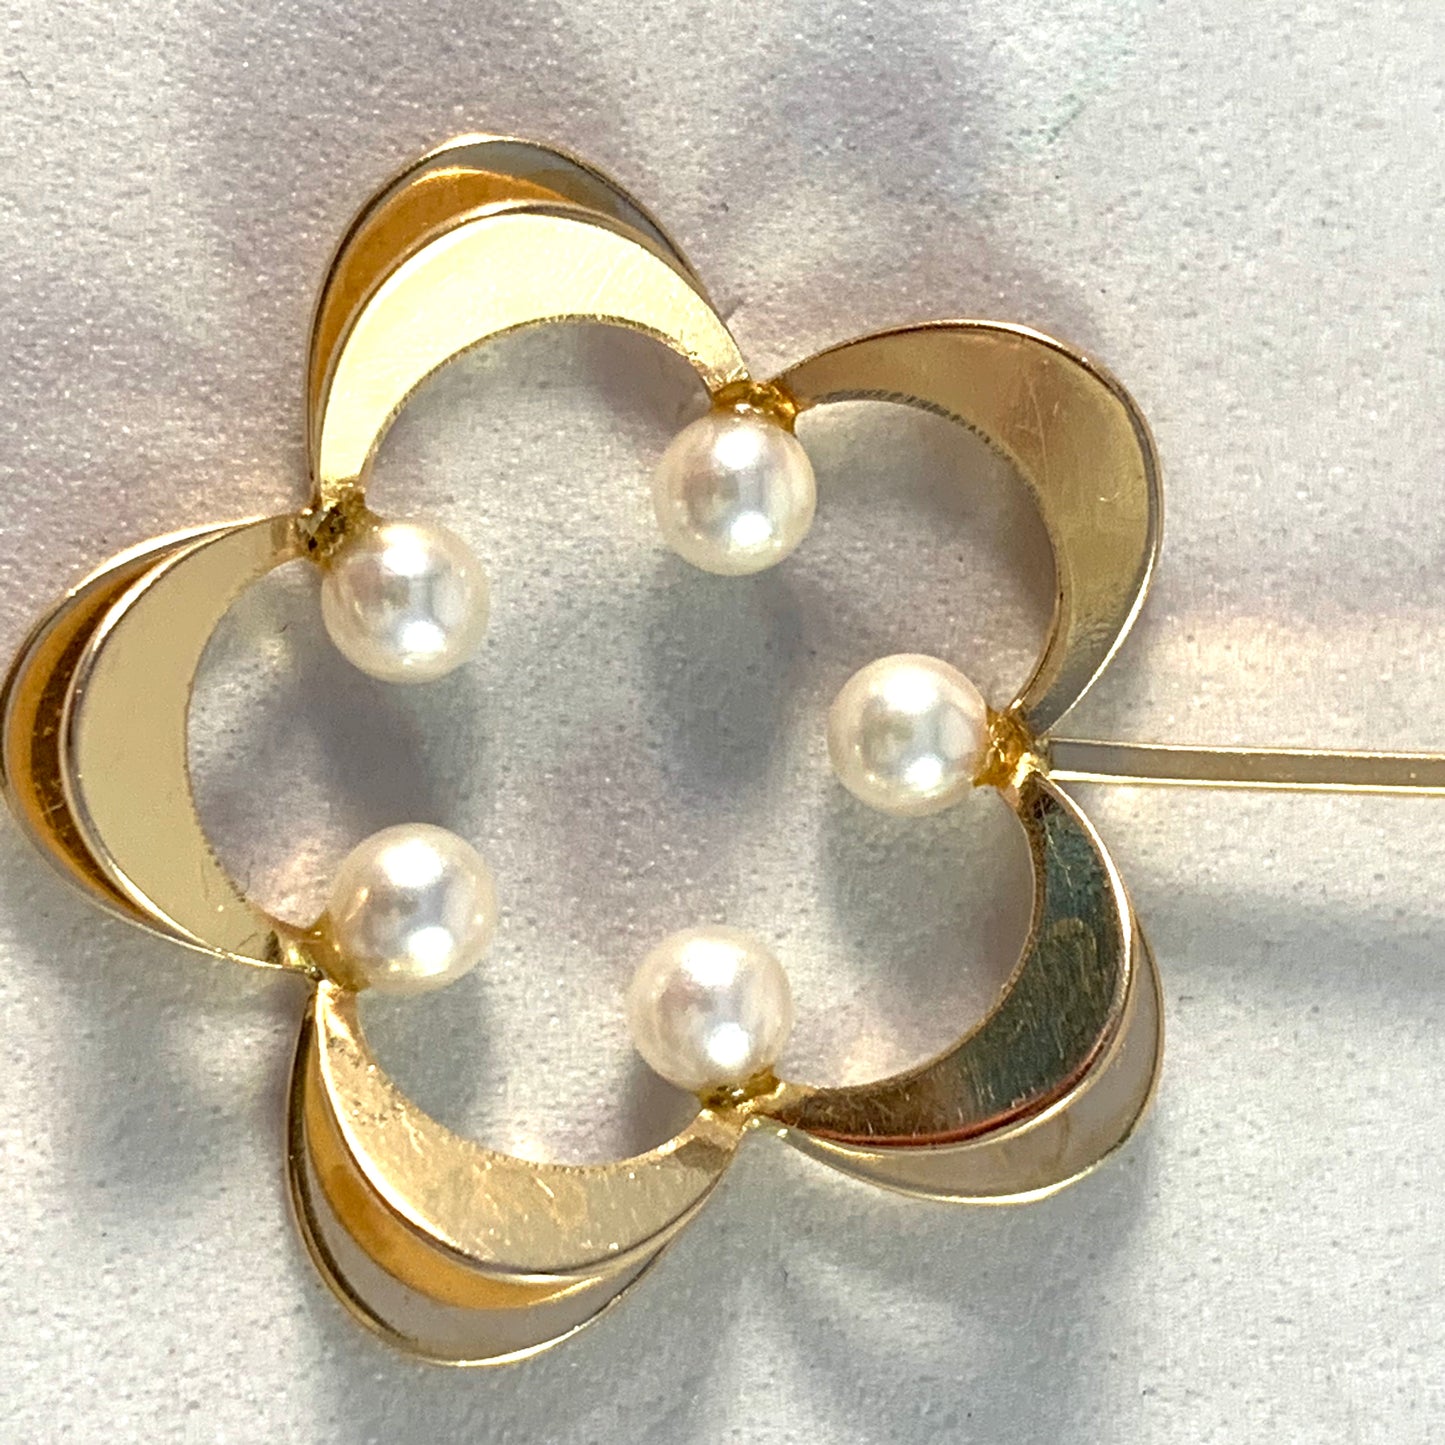 Theresia Hvorslev for Alton, Sweden 1975 Vintage 18k Gold Cultured Pearl Pendant. Signed.